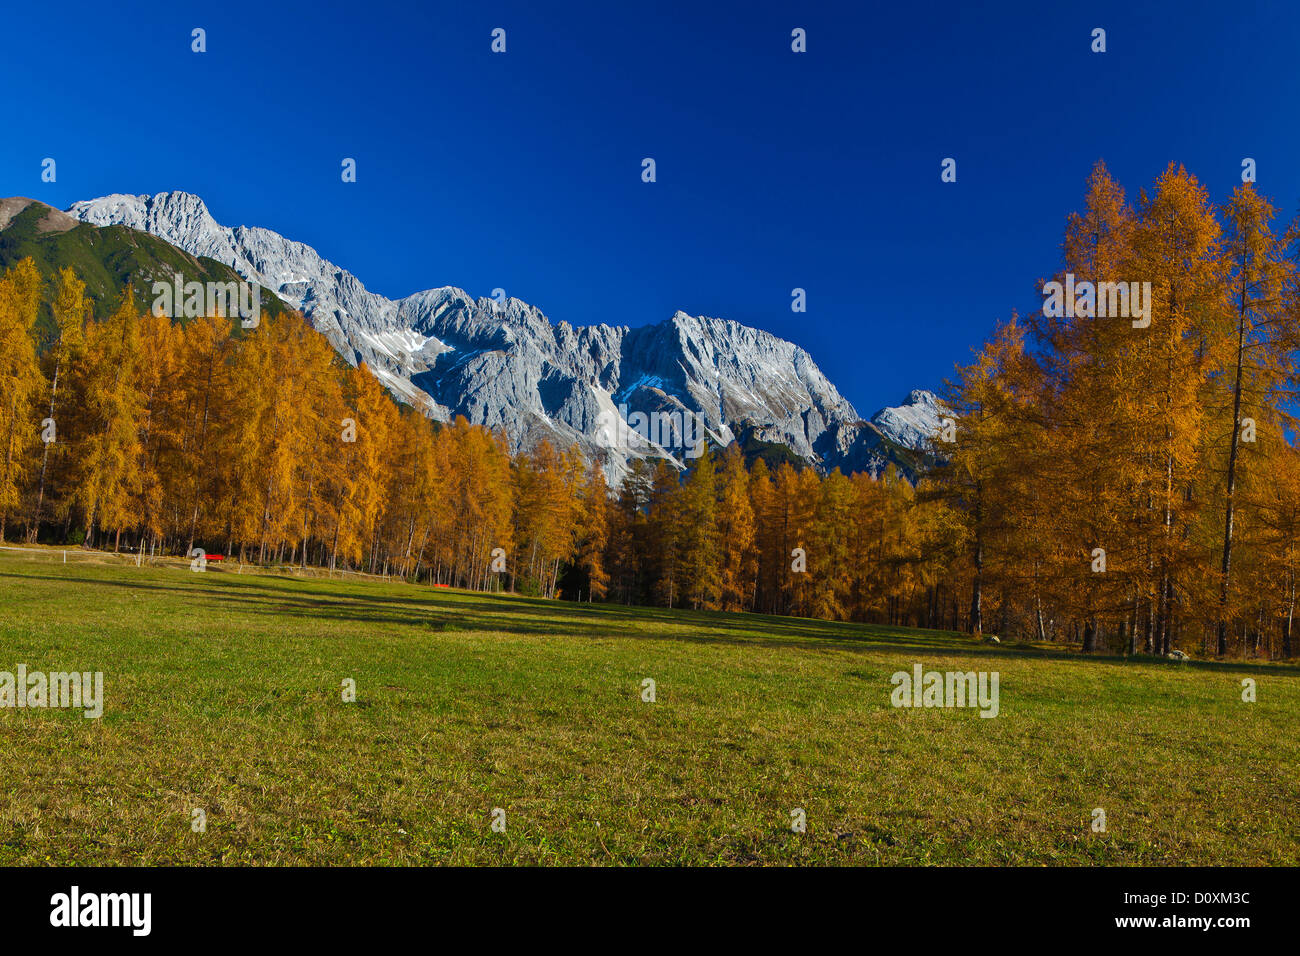 Austria, Europe, Tyrol, Tirol, Mieming, chain, plateau, Obsteig, nature, meadows, larches, mountains, Hochplattig, Mieming, chai Stock Photo